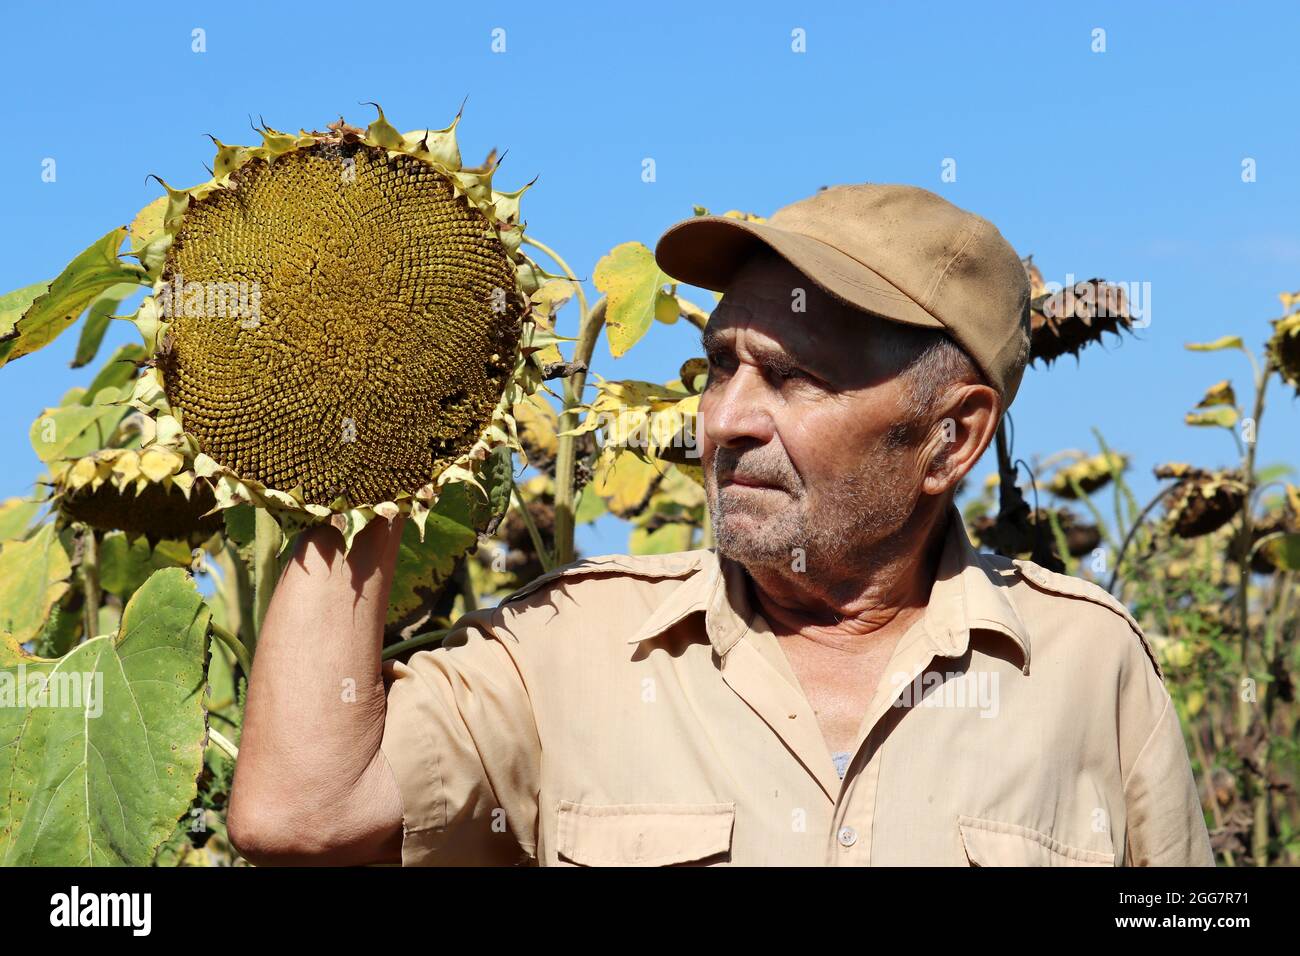 Alter Bauer auf Sonnenblumenfeld, älterer Mann inspiziert die Ernte. Arbeit auf dem Bauernhof in einem sonnigen Tag, gute Ernte Stockfoto